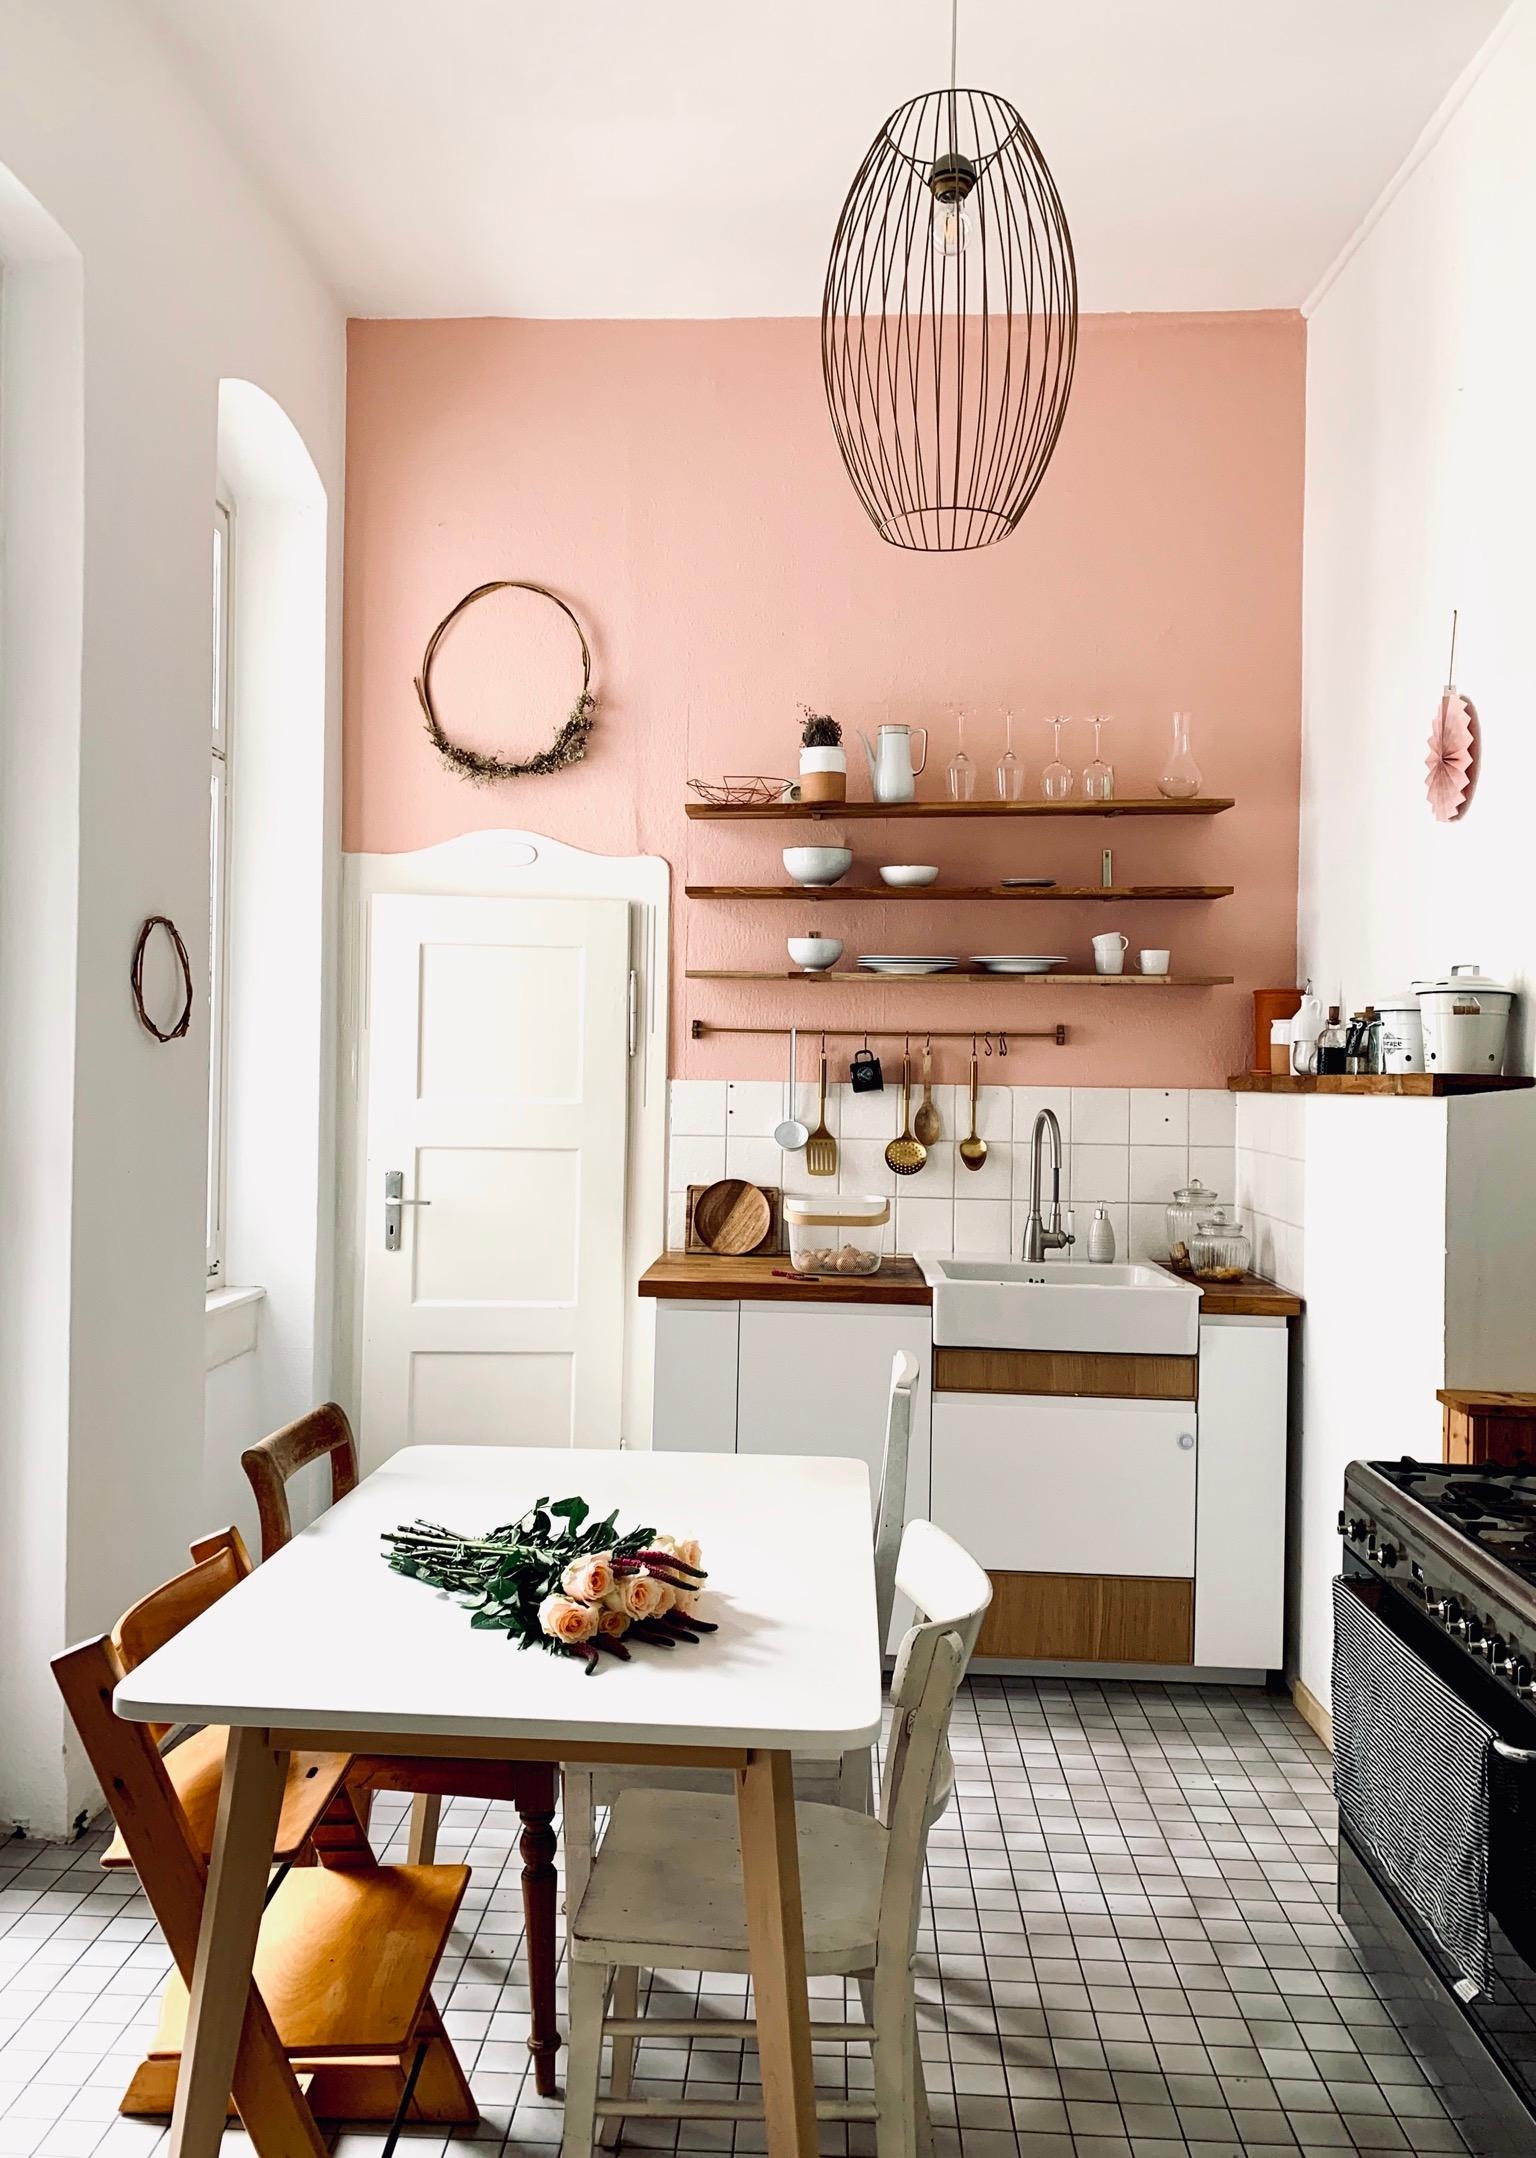 new kitchen style. Endlich fertig. #kücheninspo #altbau #kitchenstyle #couchliebt #couchstyle #interior 